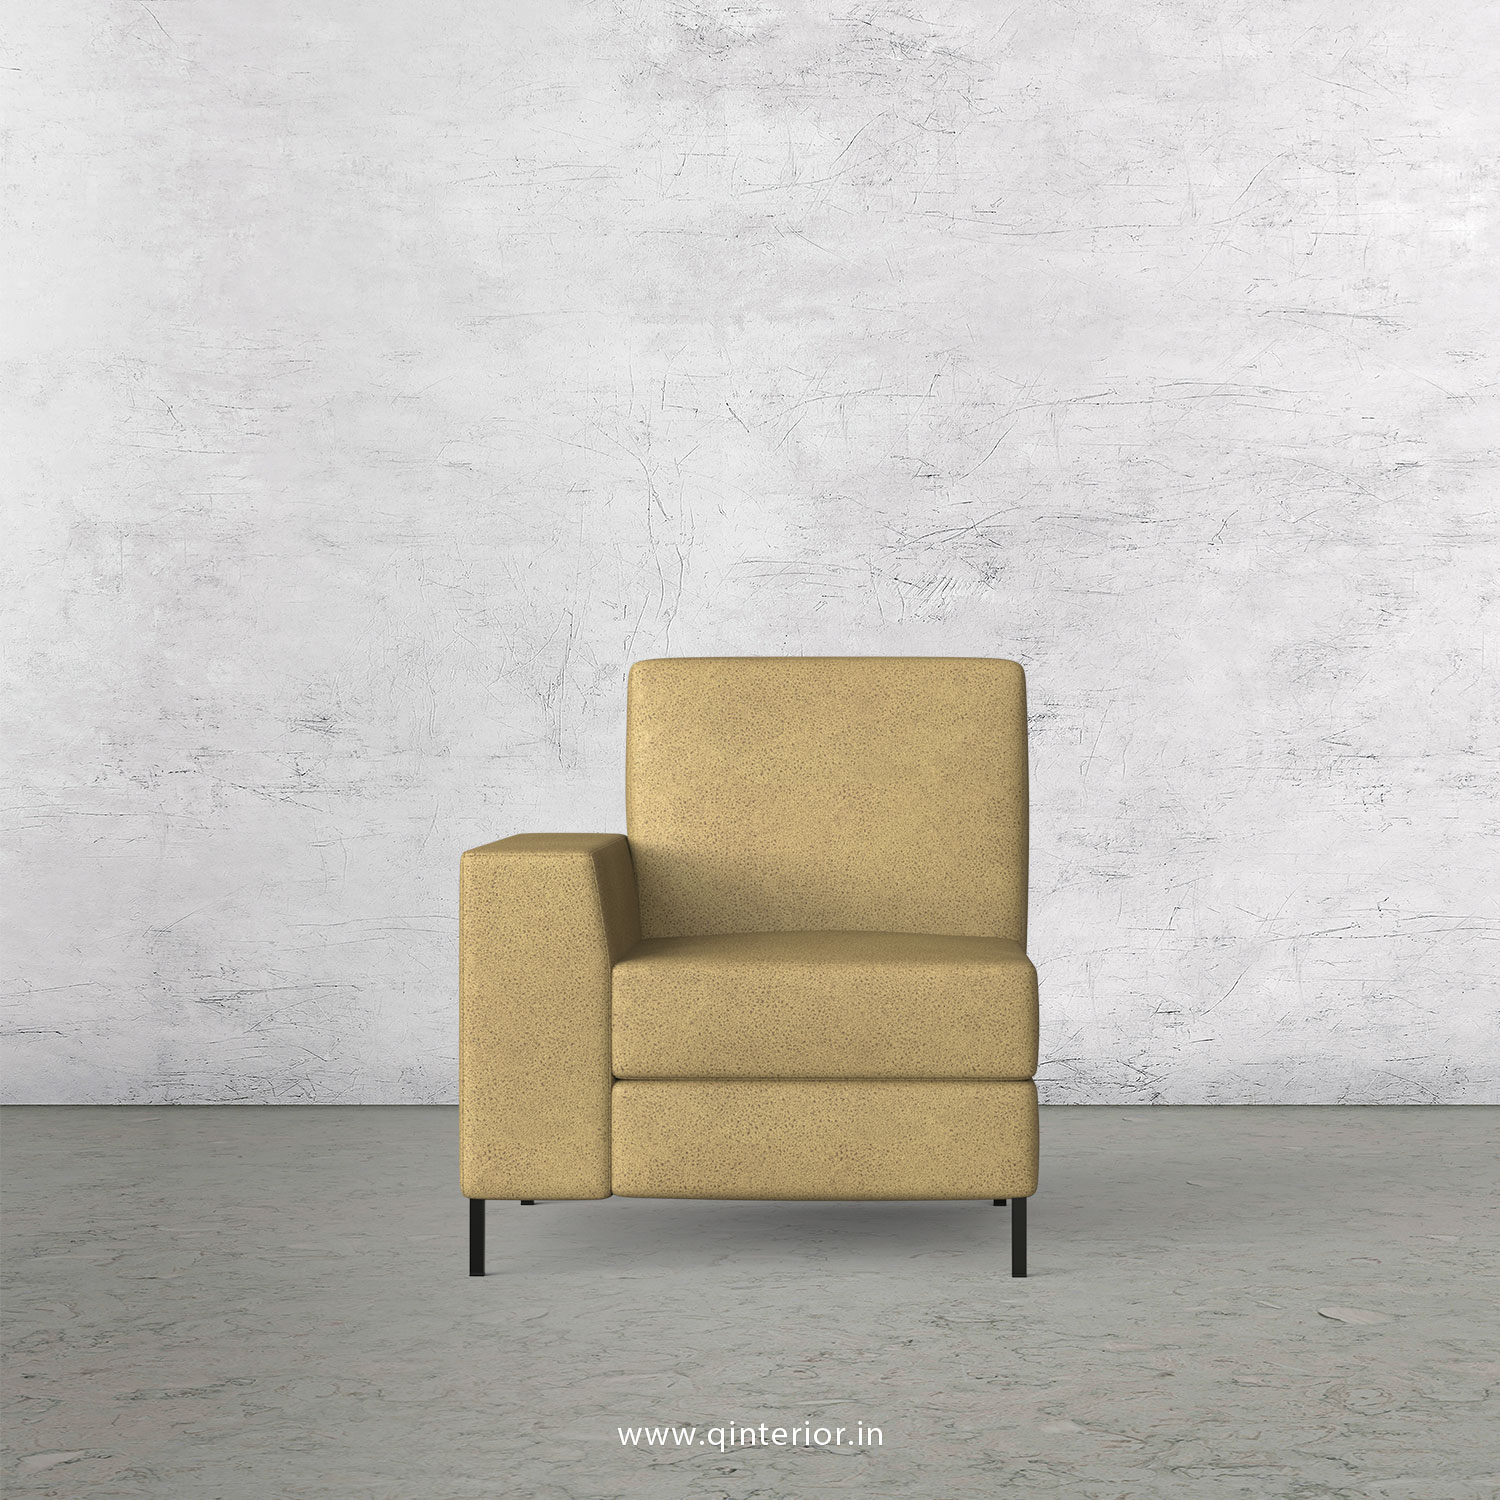 Viva 1 Seater Modular Sofa in Fab Leather Fabric - MSFA001 FL01